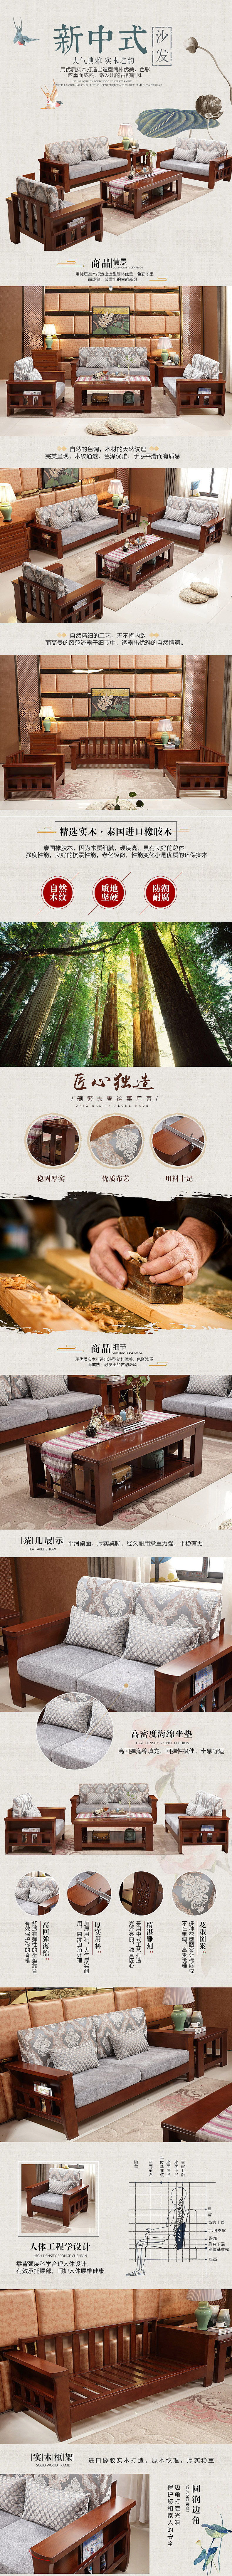 淘宝美工墨色家具中国风新中式详情页模板作品